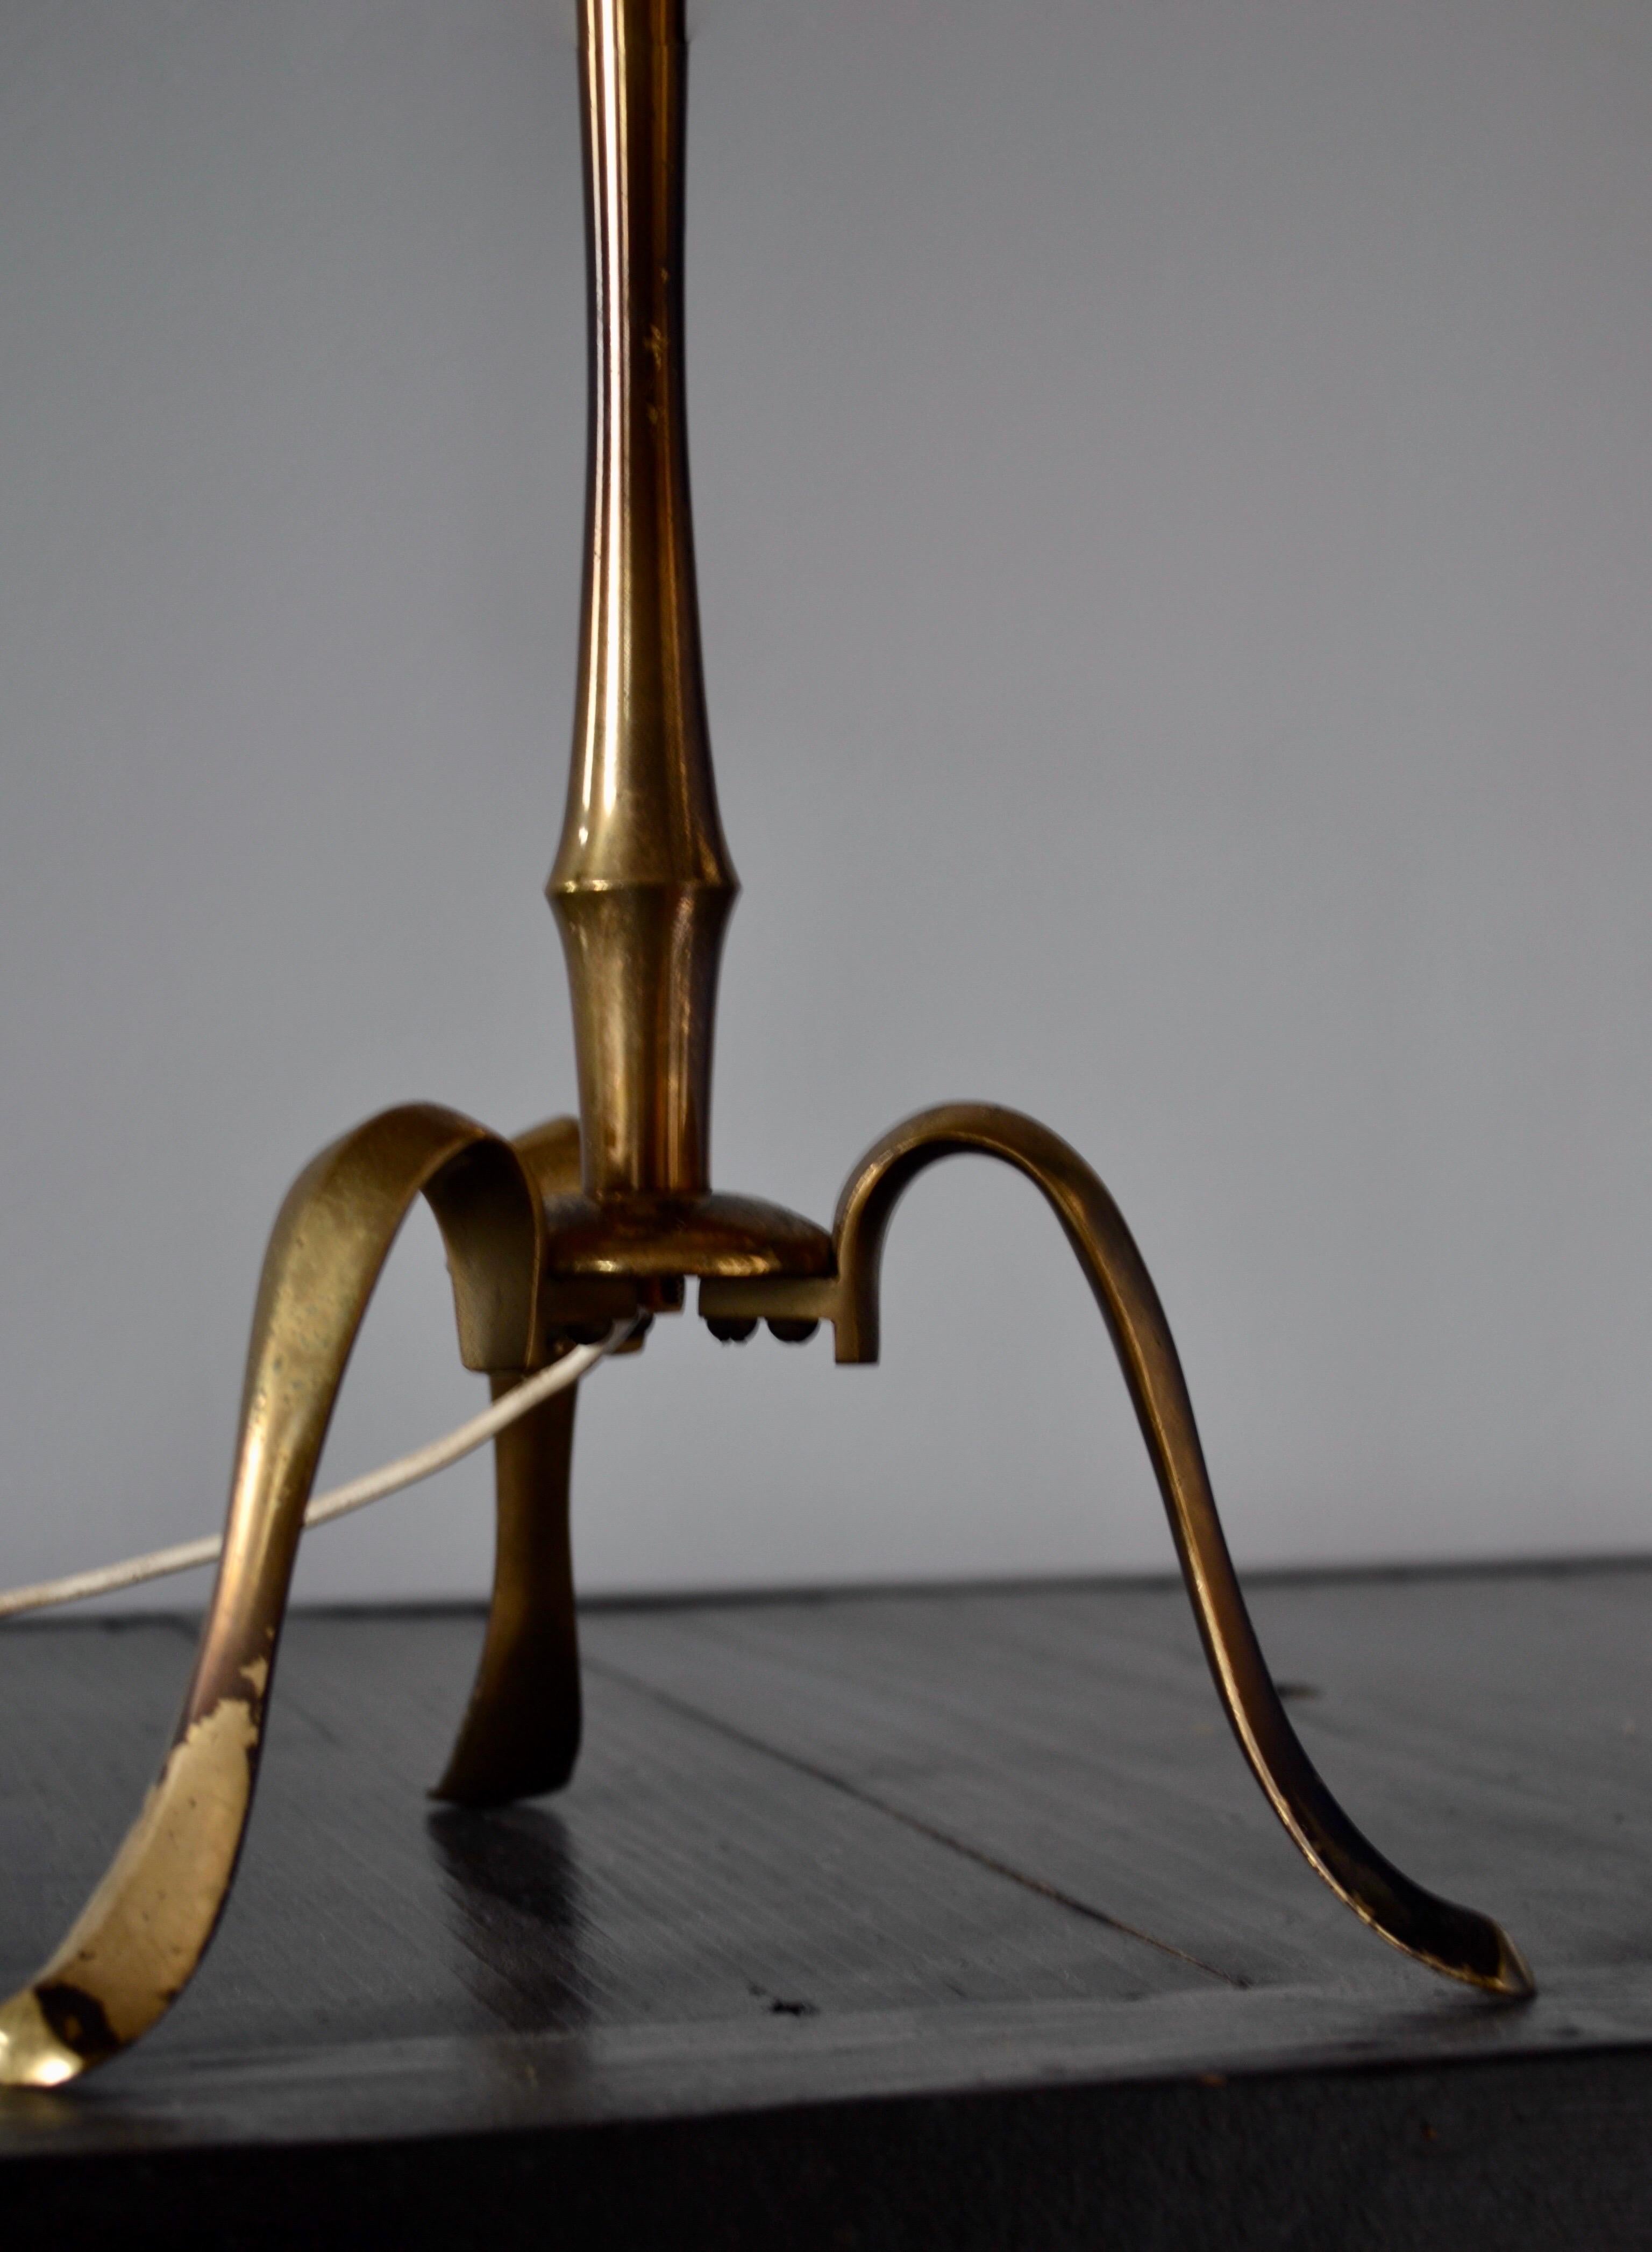 Esta lámpara de sobremesa Maison Bagues, elaborada en bronce dorado con detalles de bambú sintético, desprende una notable sofisticación. La sutil pátina de los pies de la lámpara añade un auténtico toque de carácter. La original pantalla negra y